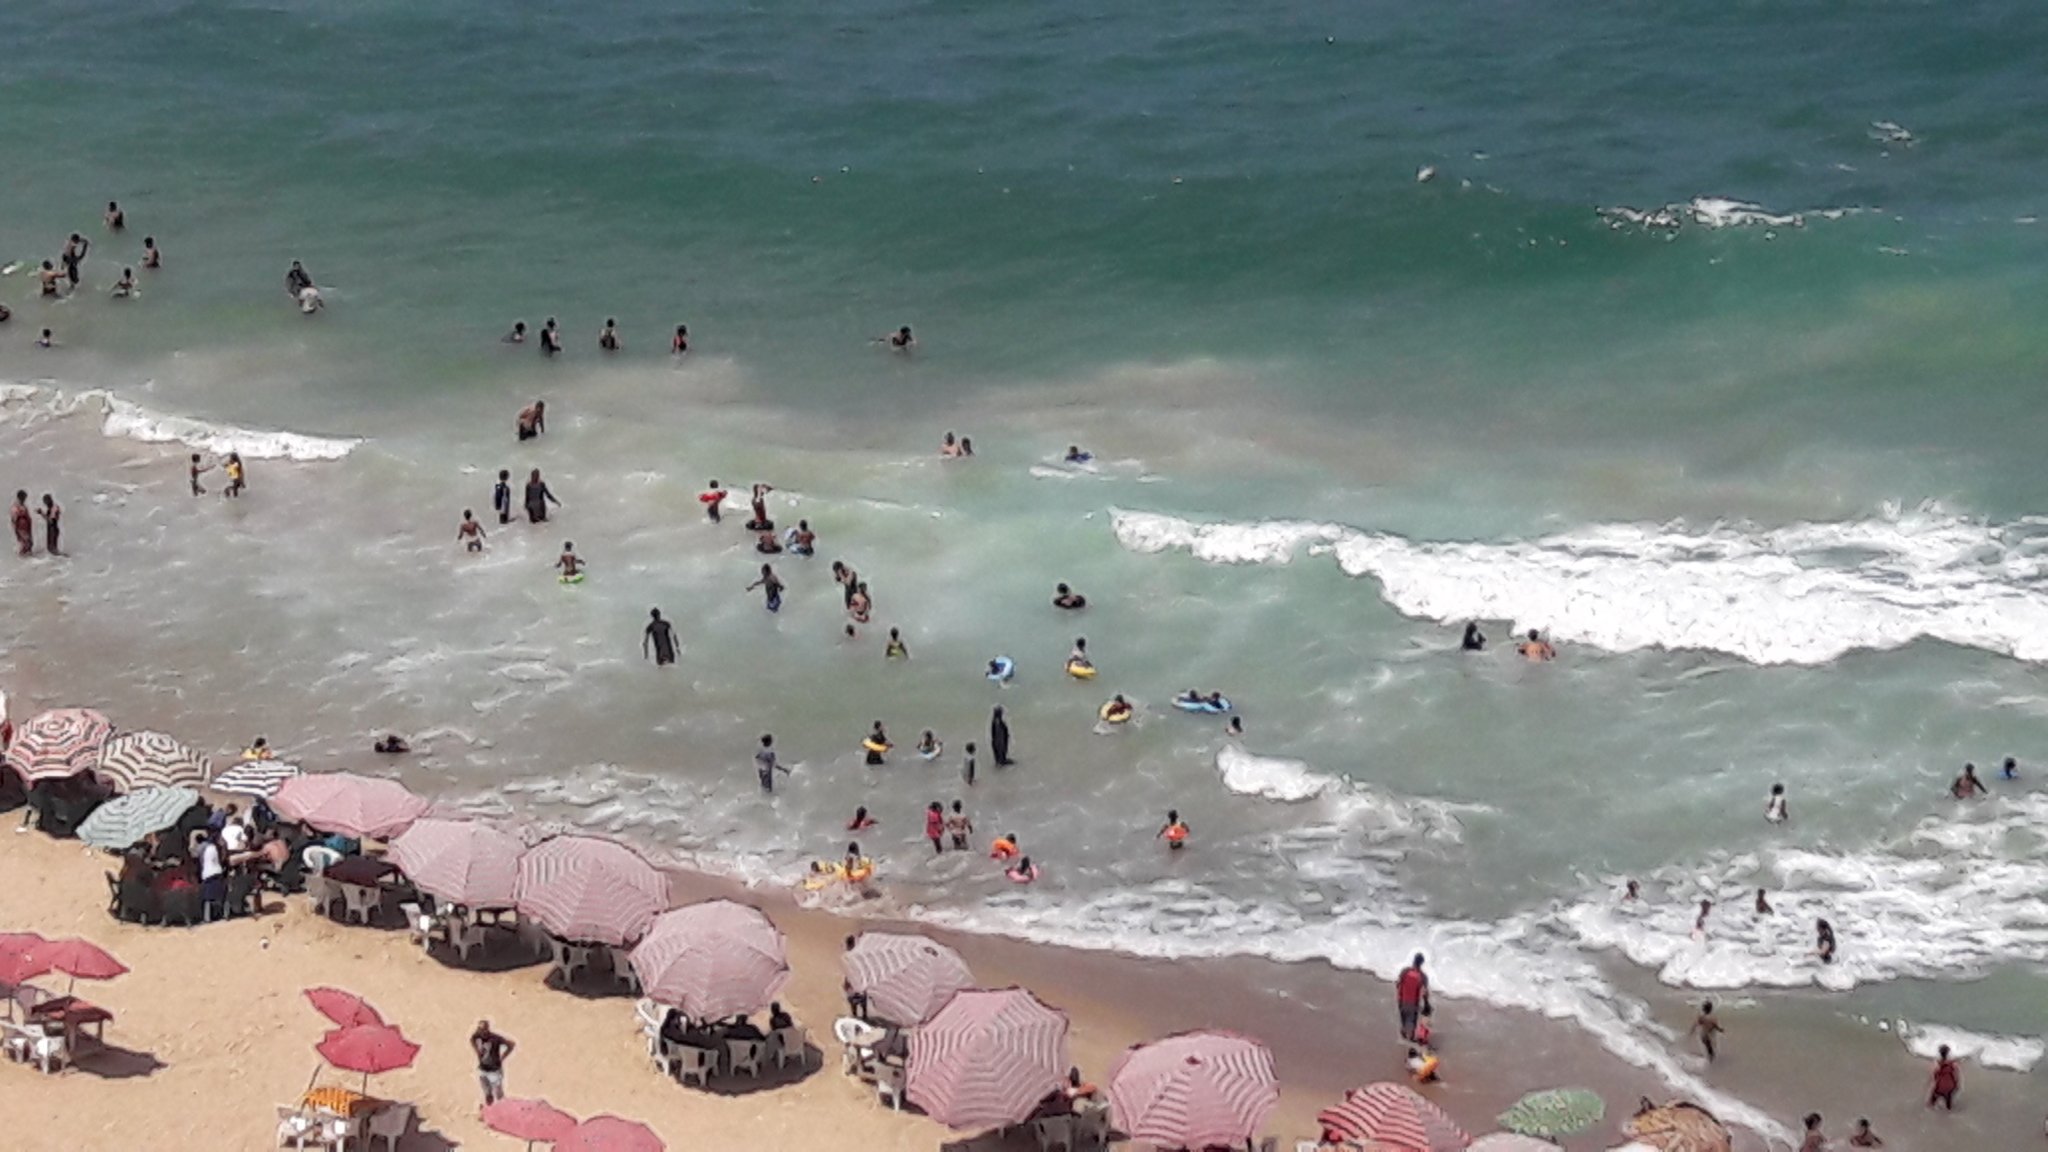 اقبال كبير على الشواطئ و المتنزهات بالاسكندرية لليوم الثالث من عيد الاضحى (2)